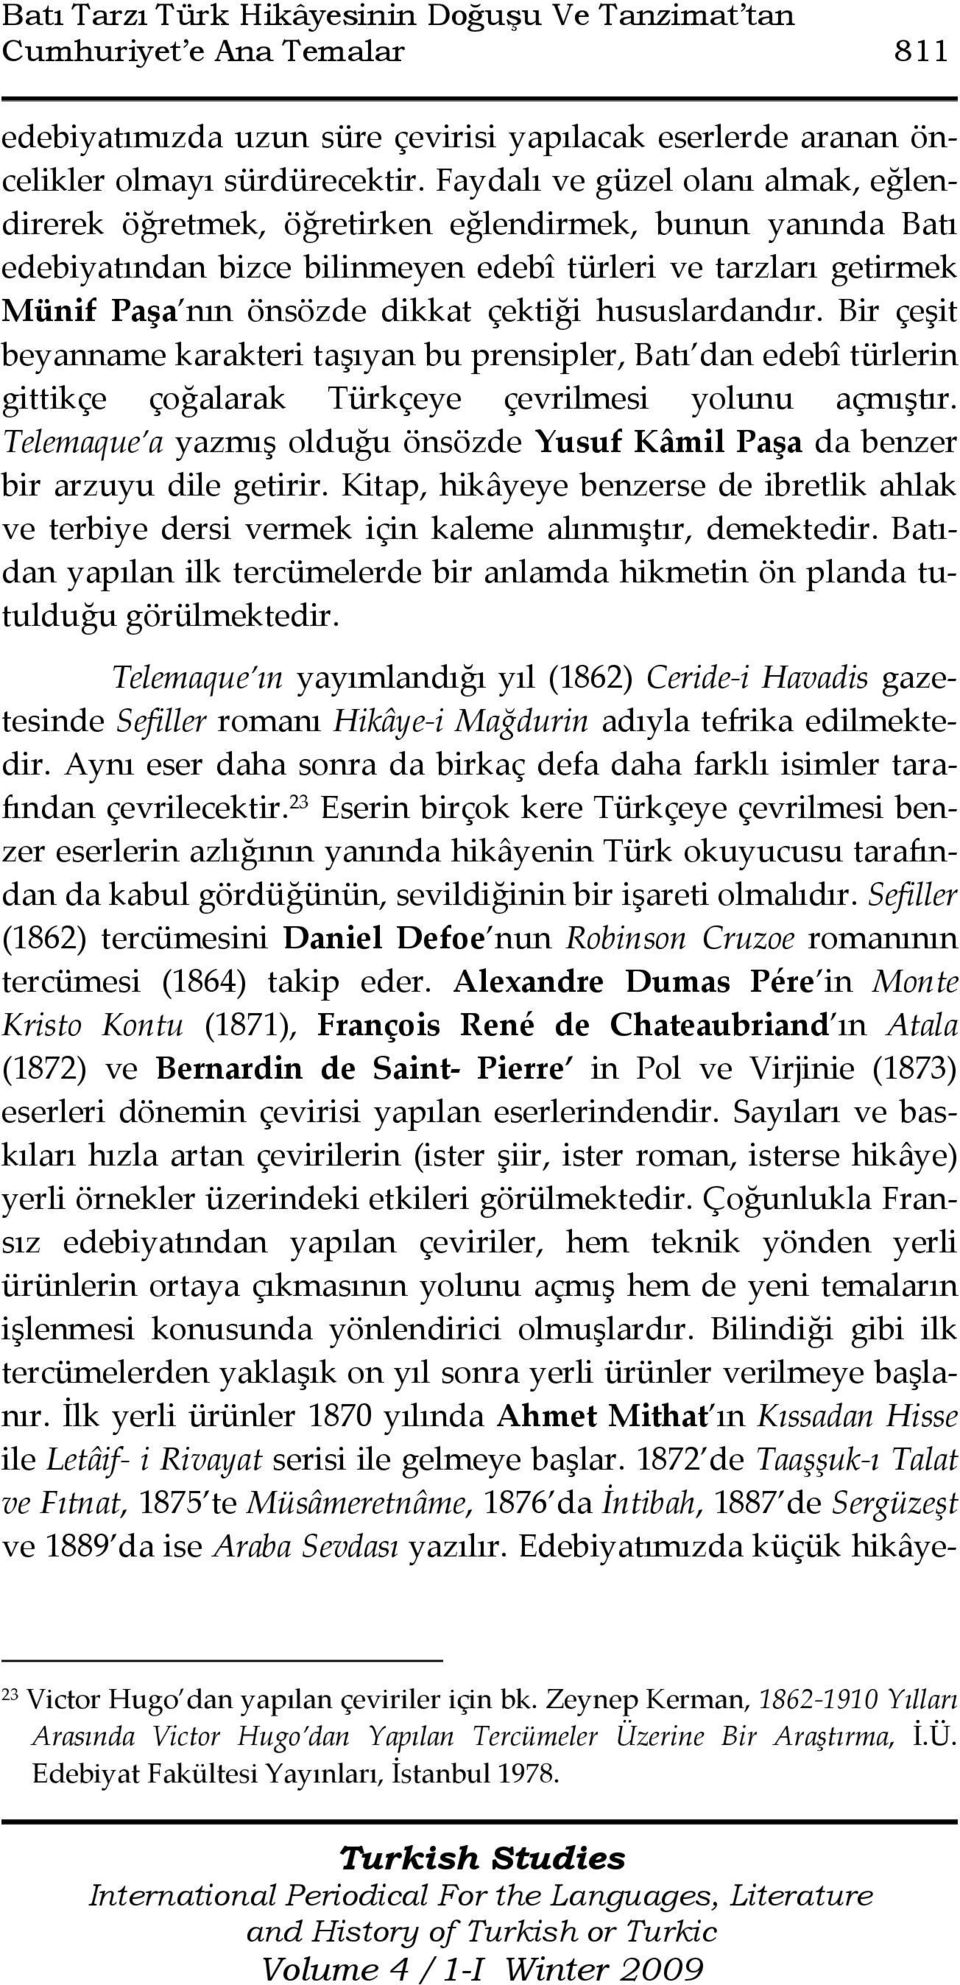 hususlardandır. Bir çeşit beyanname karakteri taşıyan bu prensipler, Batı dan edebî türlerin gittikçe çoğalarak Türkçeye çevrilmesi yolunu açmıştır.